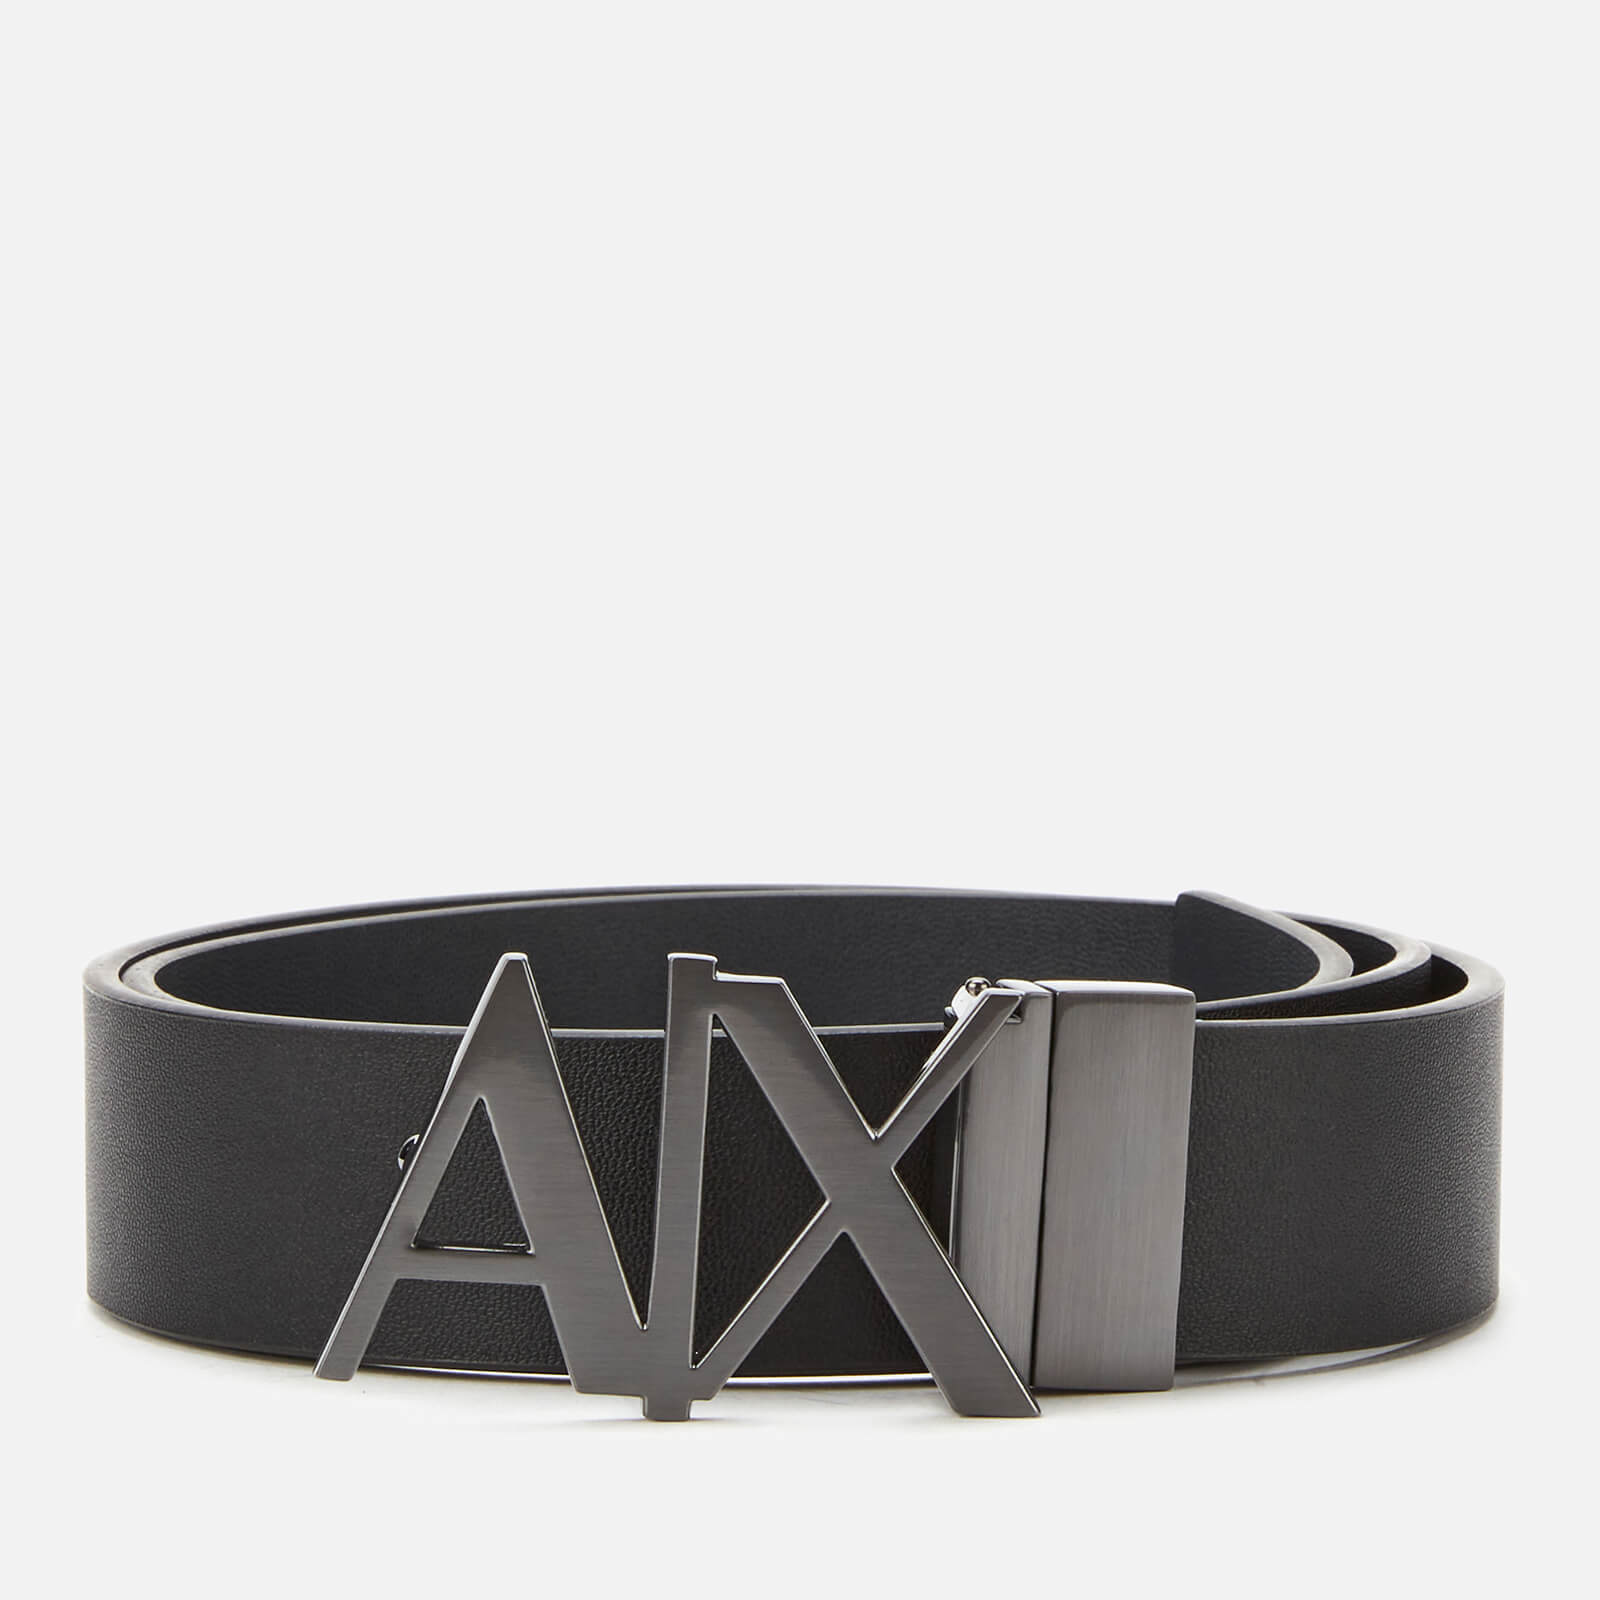 armani exchange belt buckle